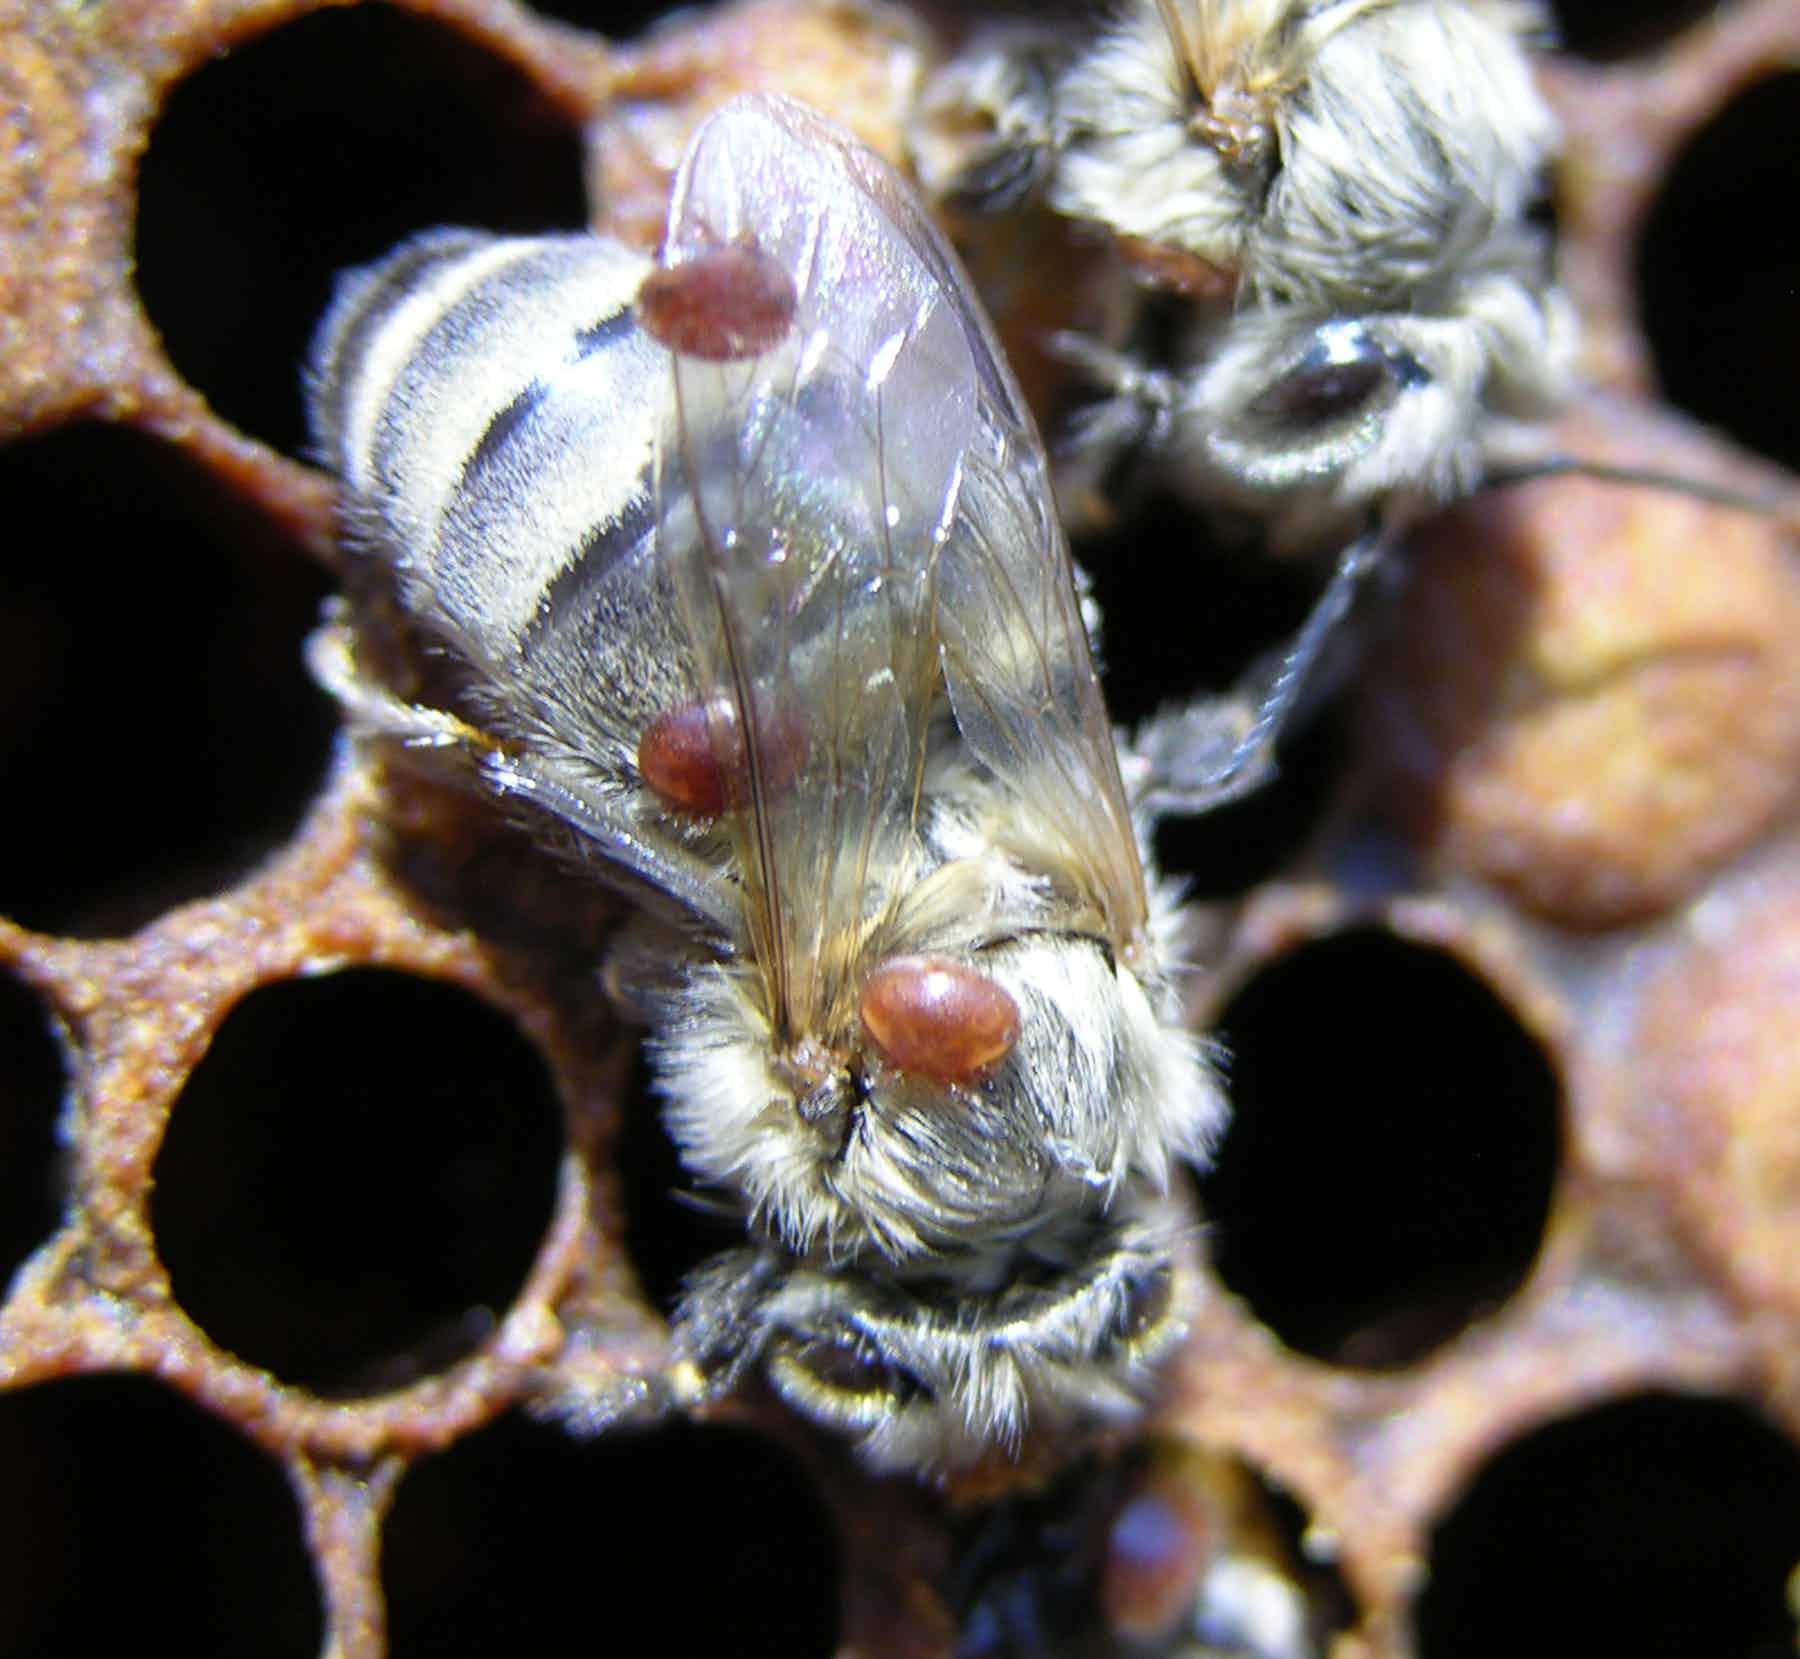 Обработка пчел от клеща весной и осенью. как лечить варроатоз. бипин, тимол, муравьинка и щавелевая кислота для пчел. – med-pochtoi.ru